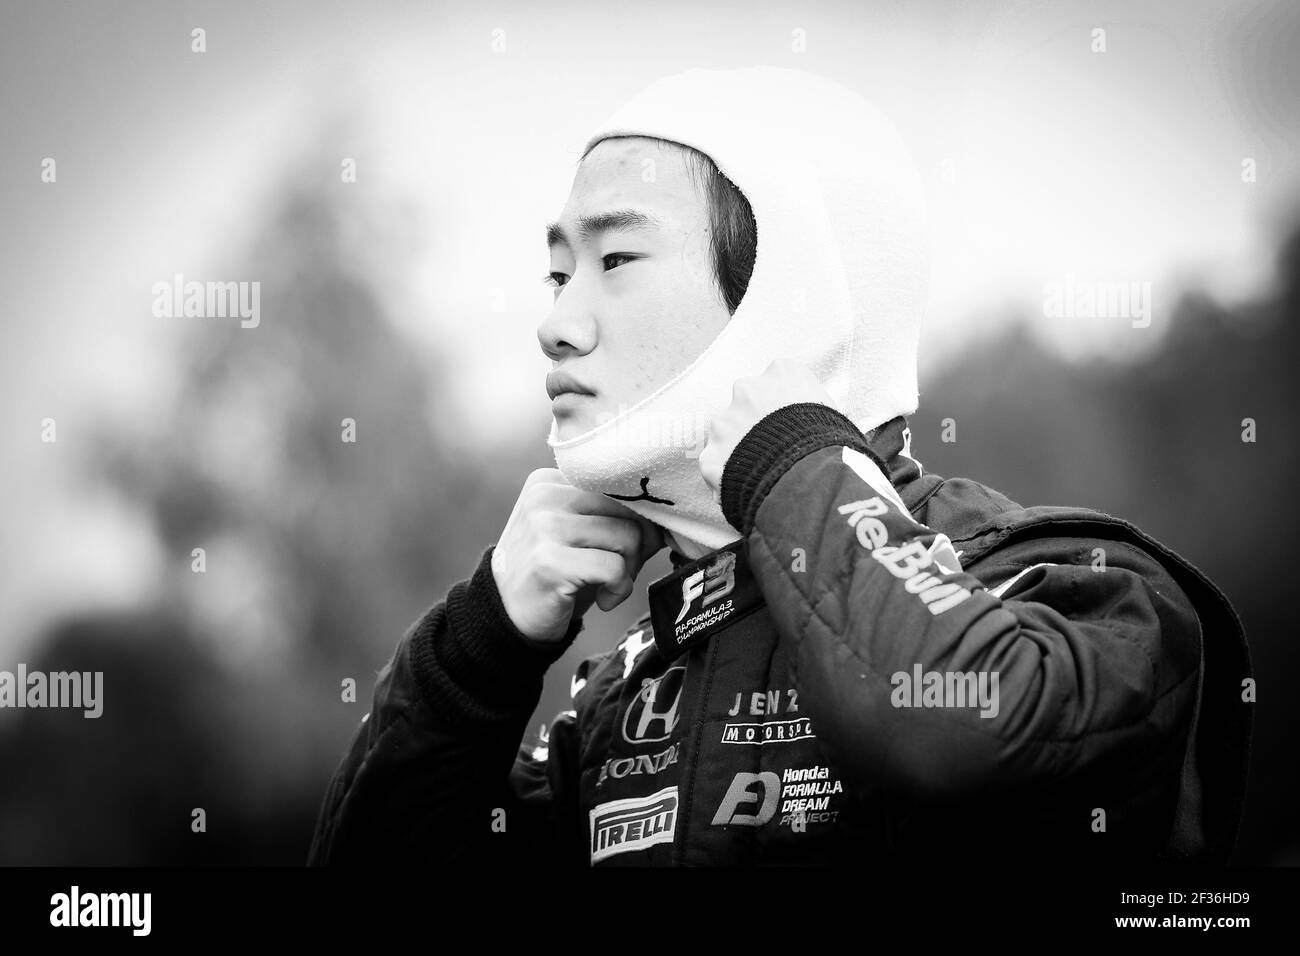 14 TSUNODA Yuki, Jenzer Motorsport, Portrait während der FIA F3 Meisterschaft 2019, Belgien, vom 29. August bis 1. september in Spa -Francorchamps, Belgien - Foto Sebastiaan Rozendaal / DPPI Stockfoto